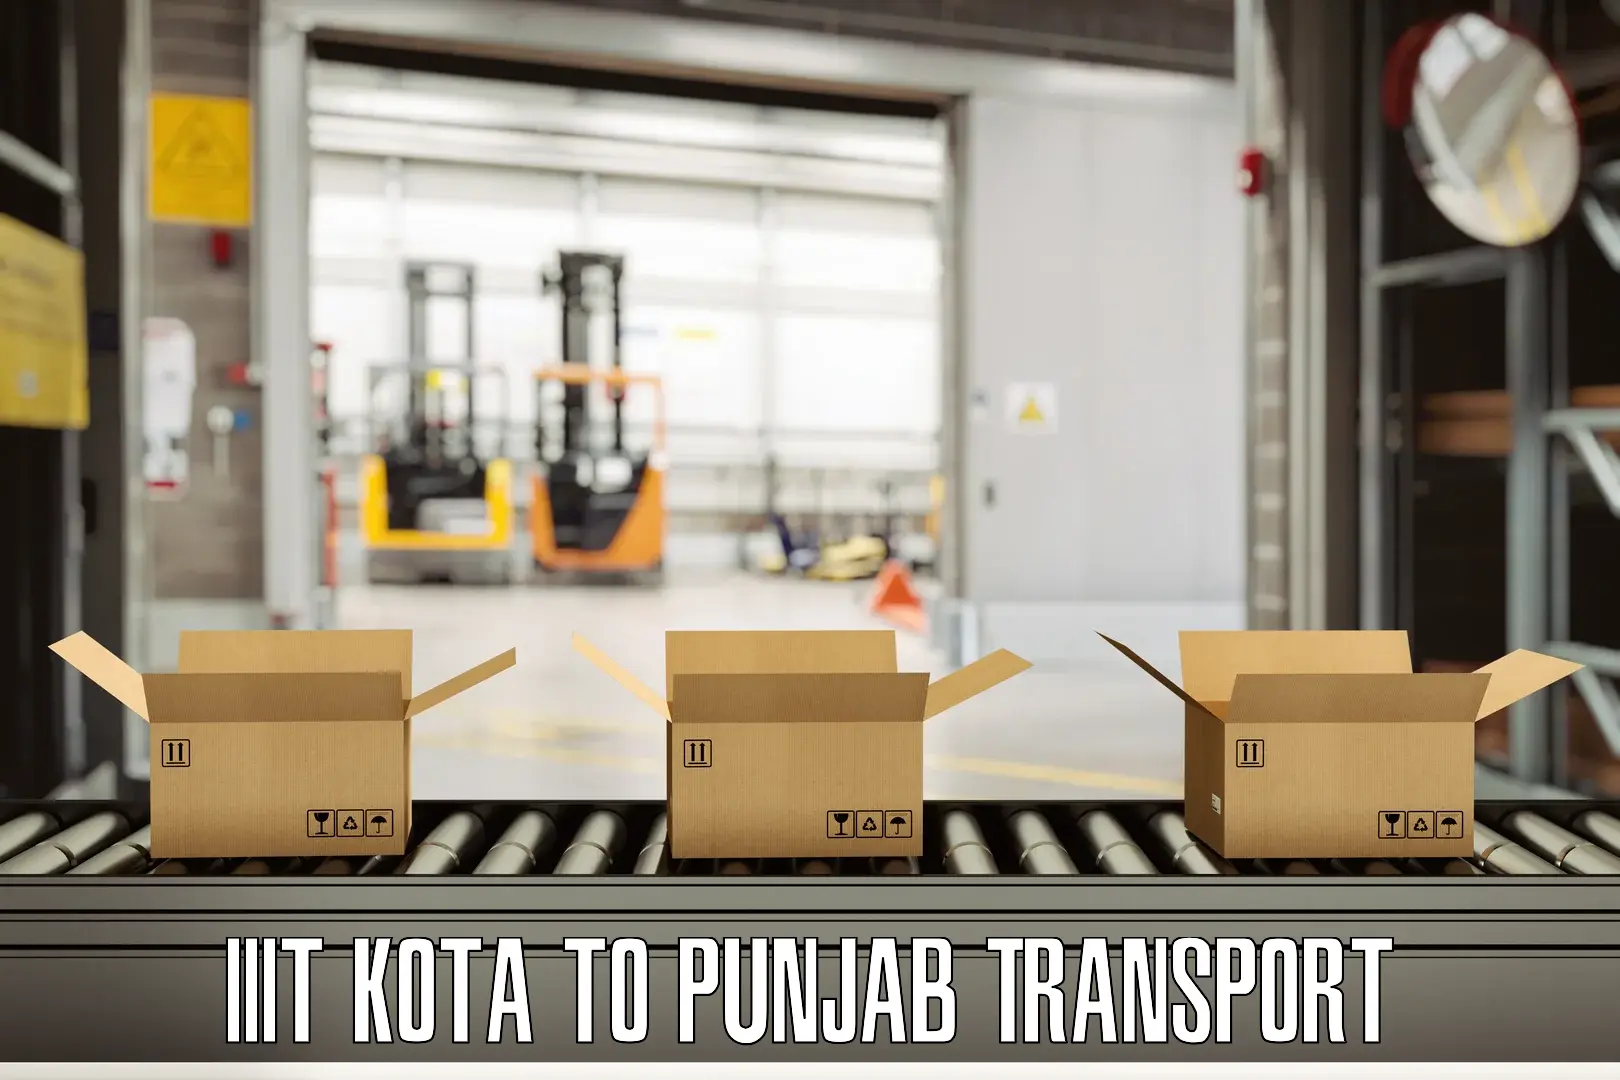 Pick up transport service IIIT Kota to Punjab